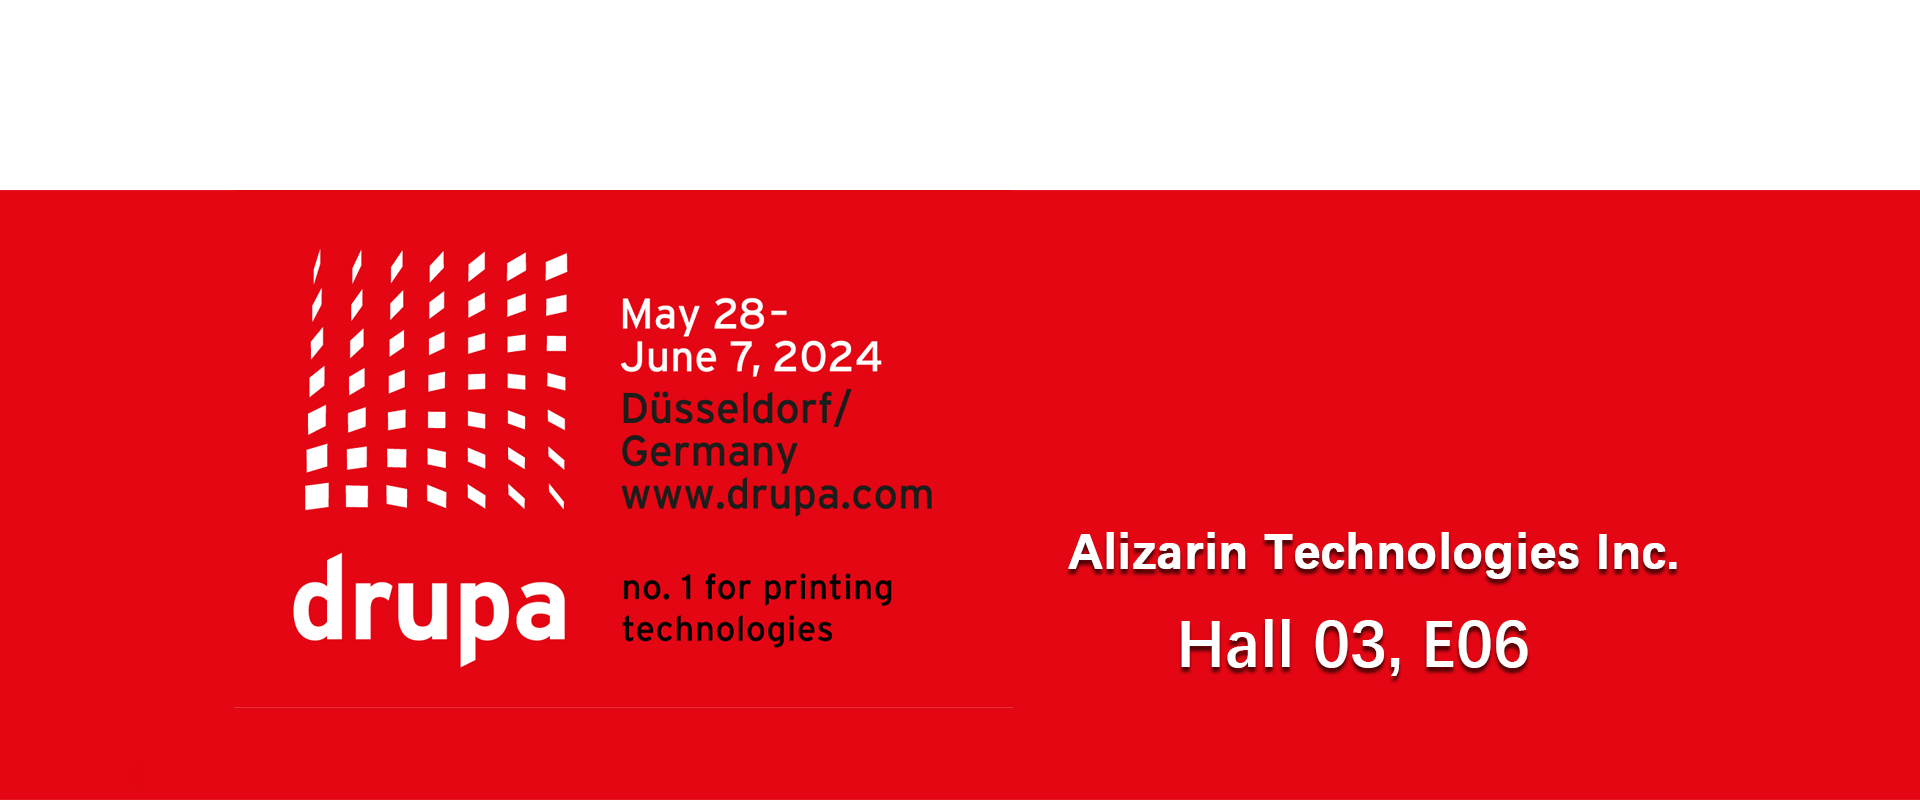 Drupa 2024 in Düsseldorf Germany, alizarin technologies Booth is Hall 03, E06